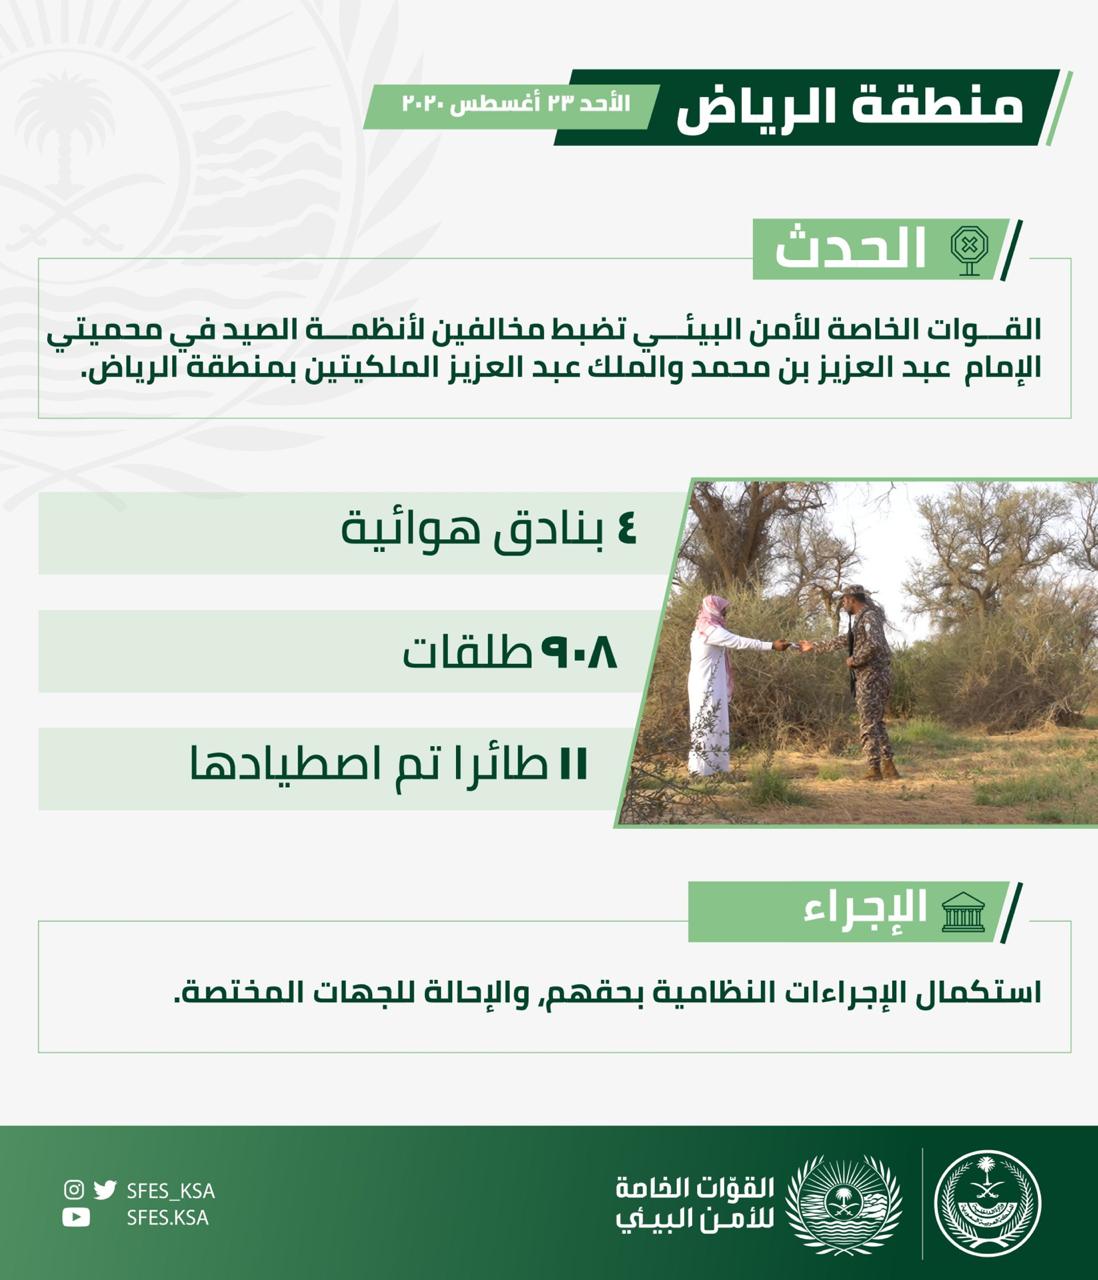 ضبط ٦مخالفين لأنظمة الصيد بمحمية الامام عبد العزيز الملكية